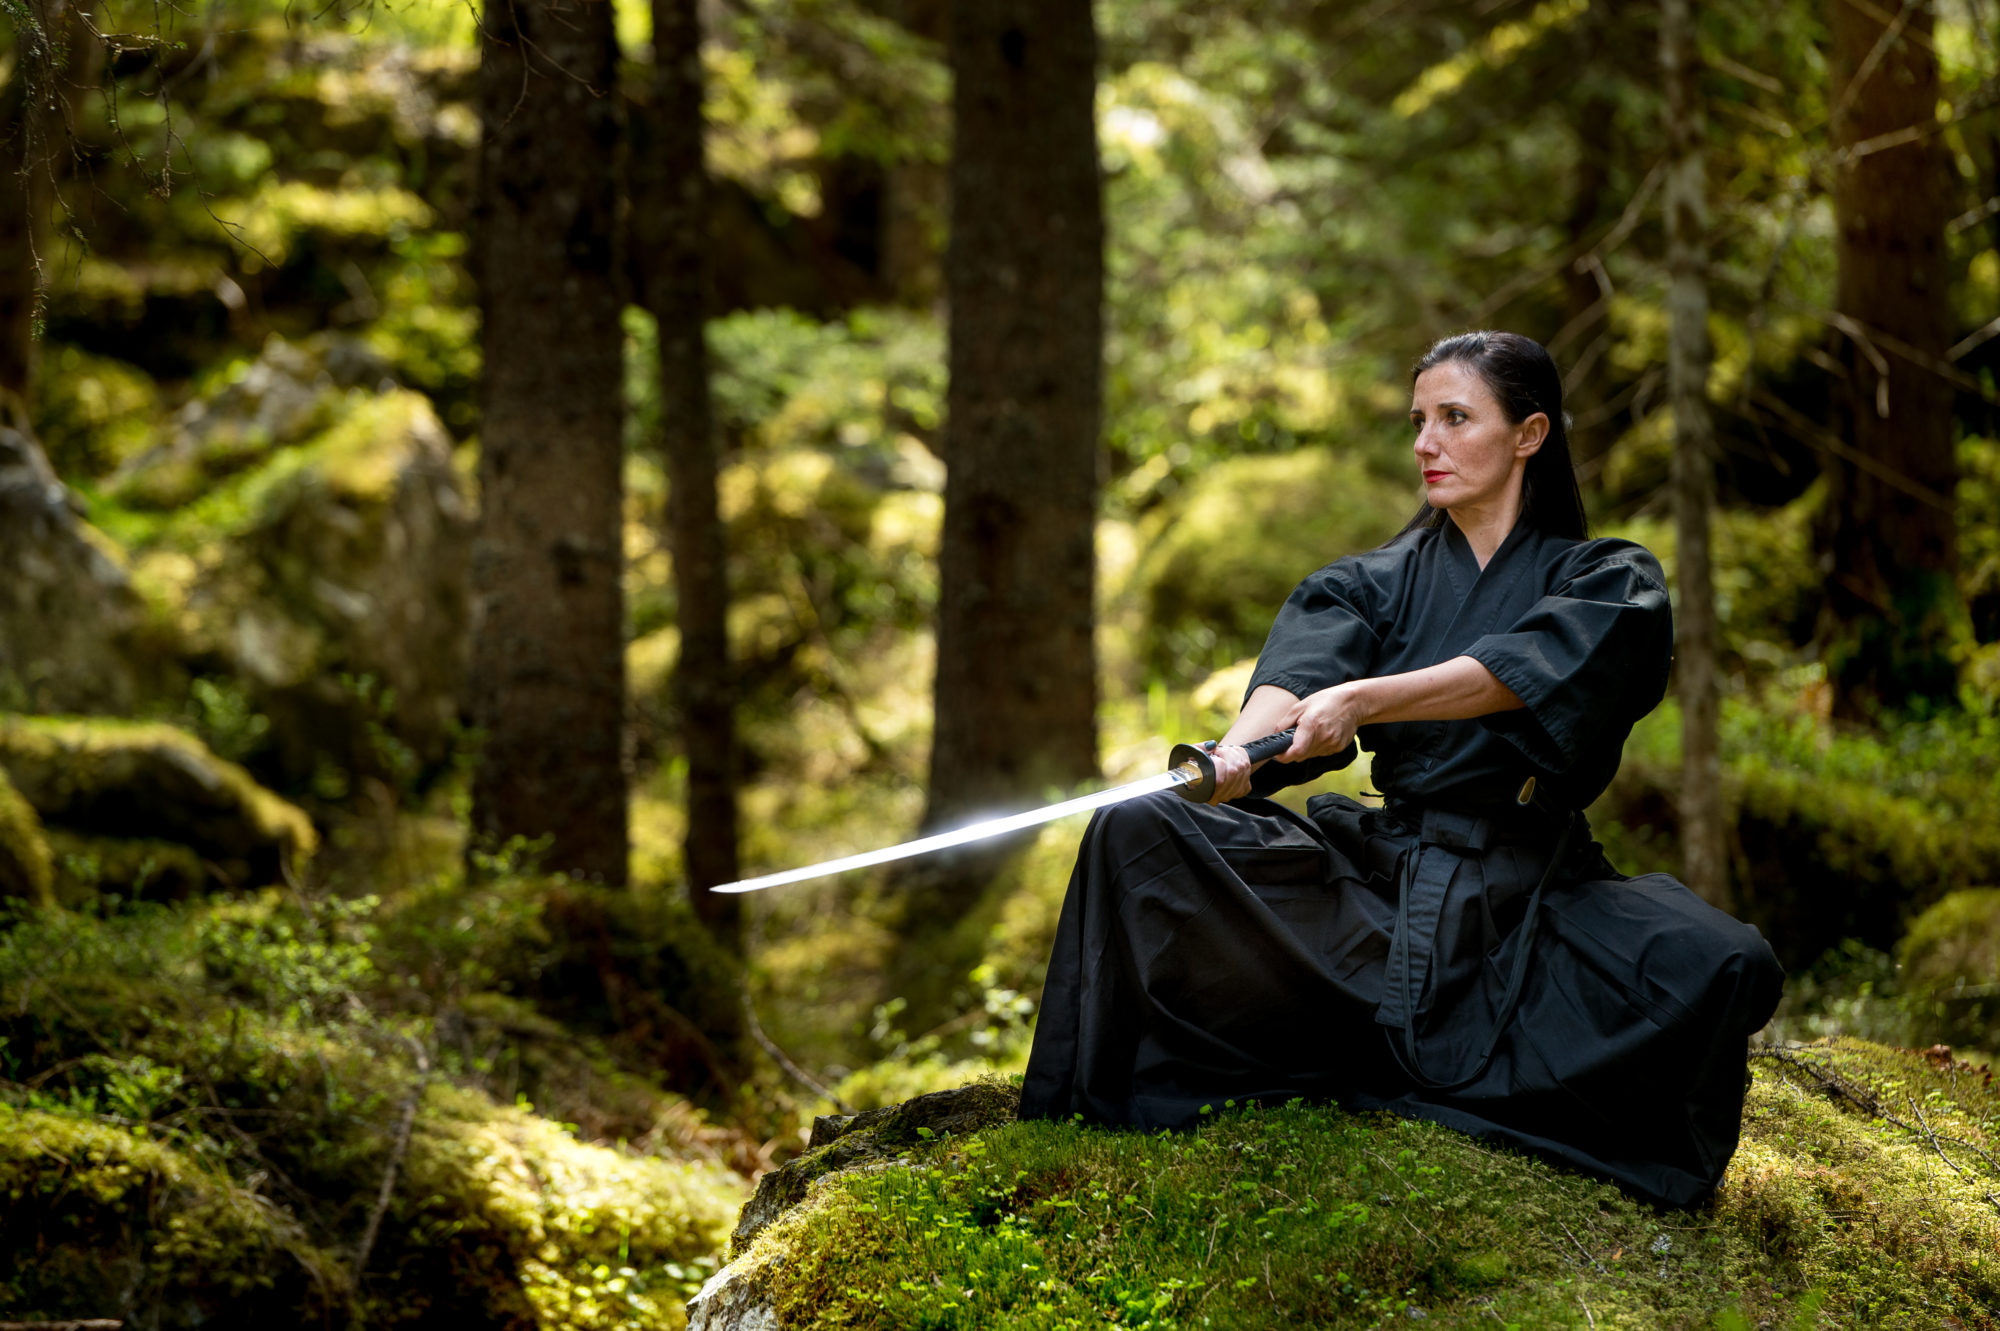 Foto di un’atleta si esercita con la katana in un bosco